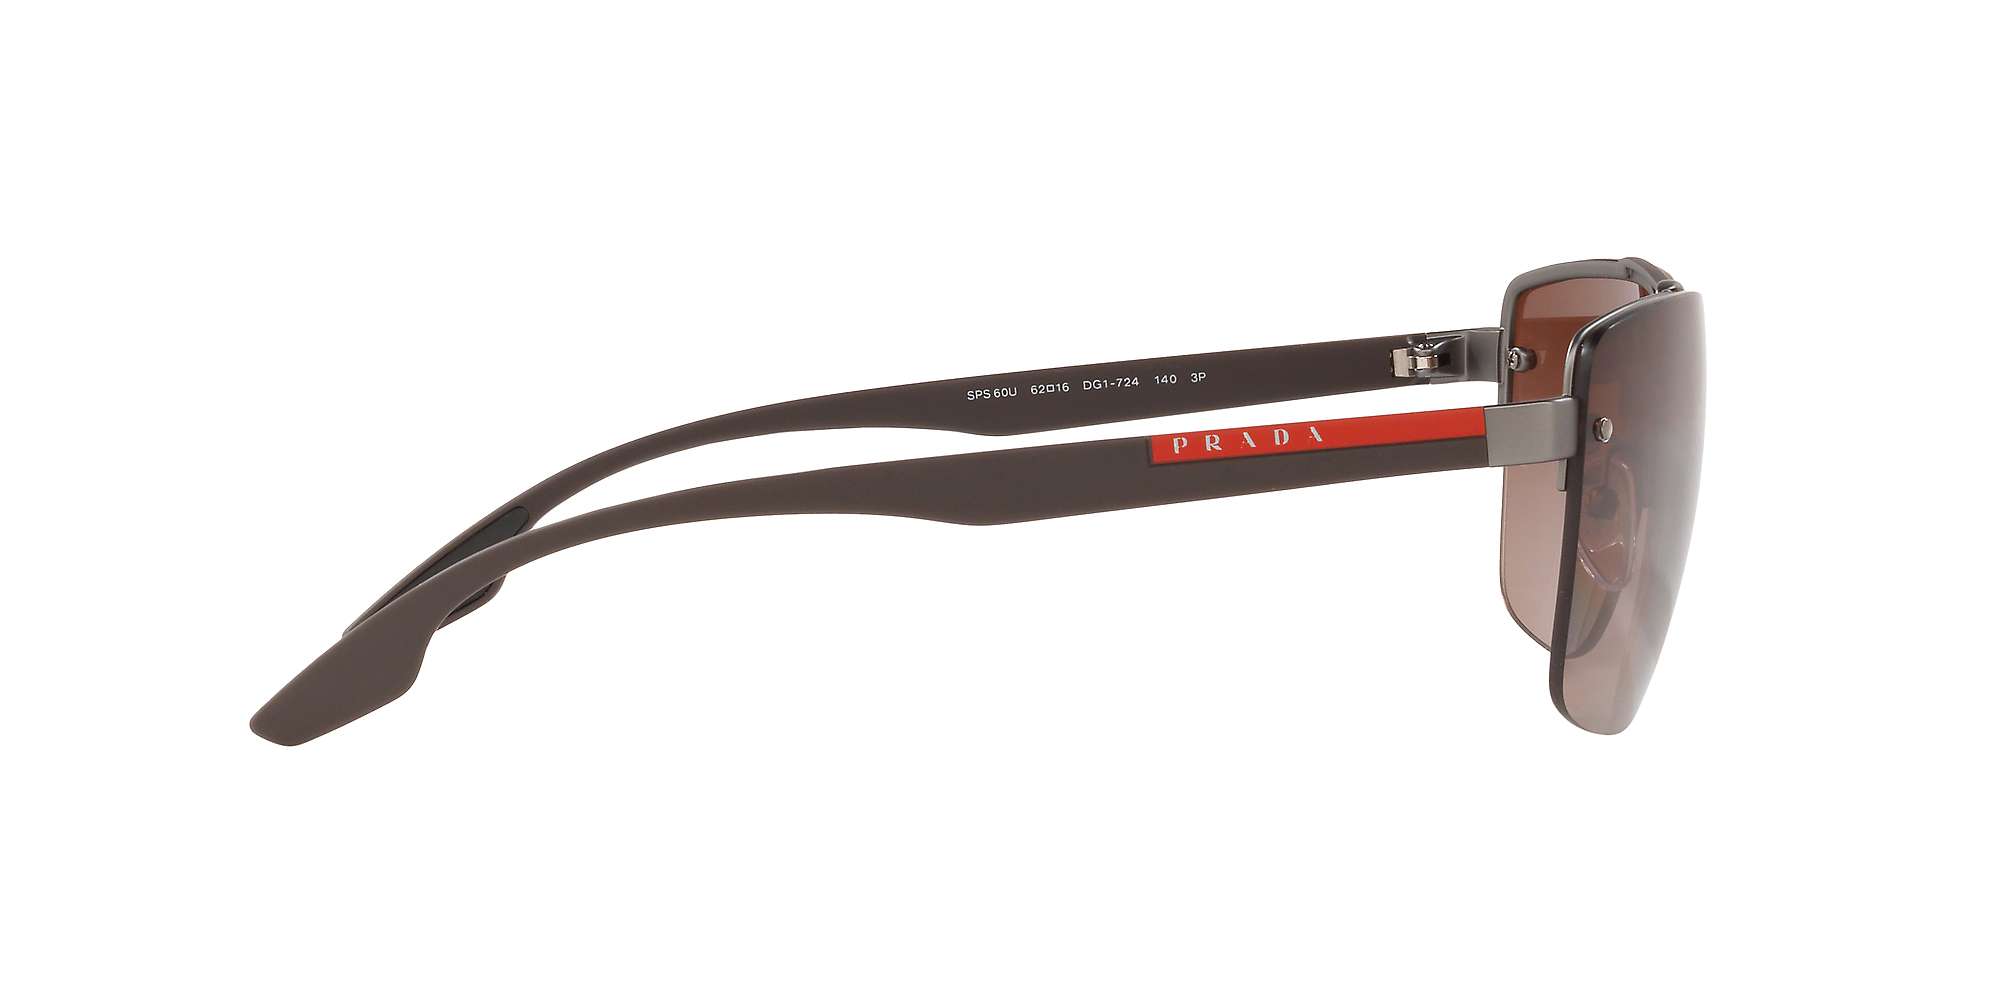 Buy Prada Linea Rossa PS 60US Men's Polarised Square Sunglasses Online at johnlewis.com